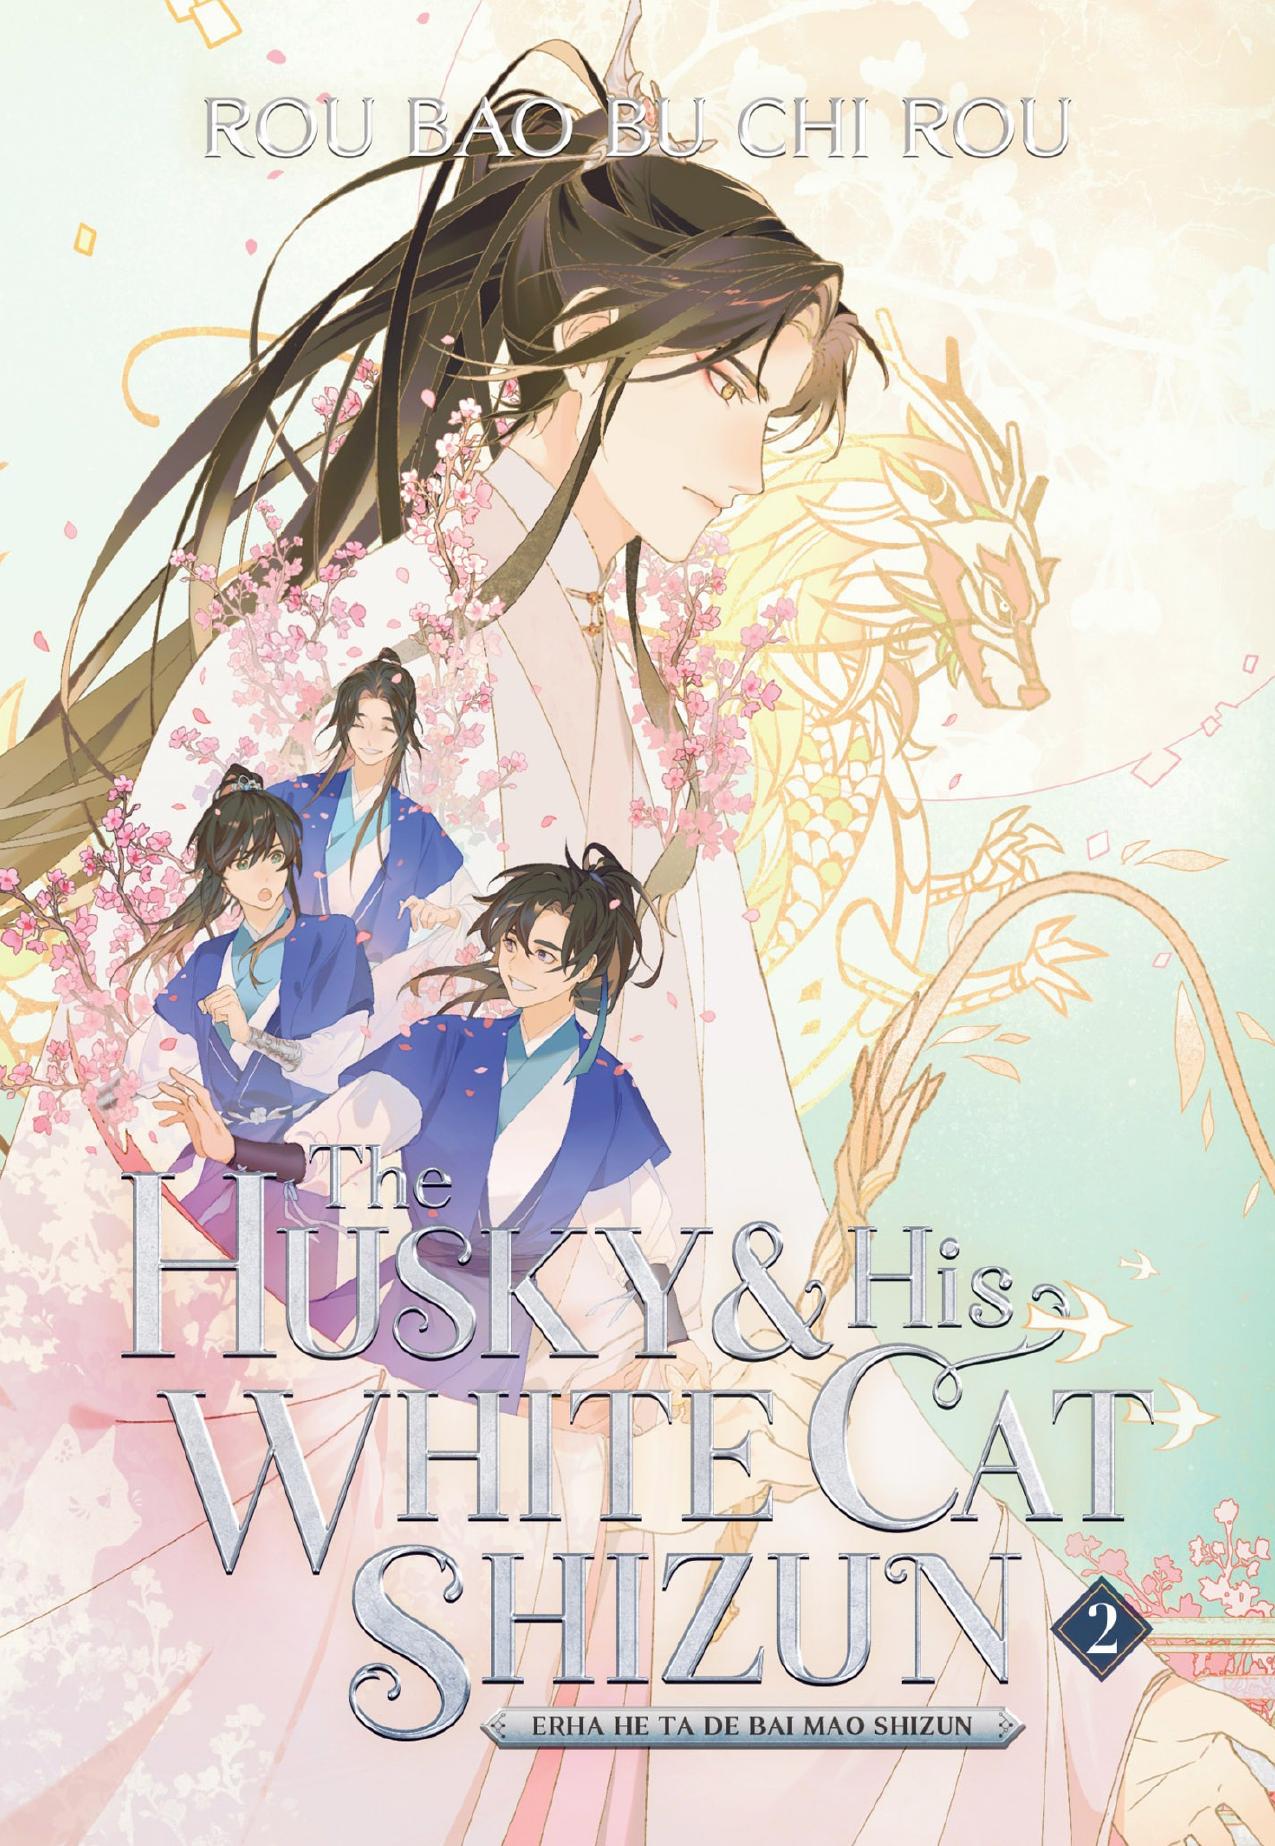 The Husky and His White Cat Shizun: Erha He Ta De Bai Mao Shizun Vol. 2 by Rou Bao Bu Chi Rou